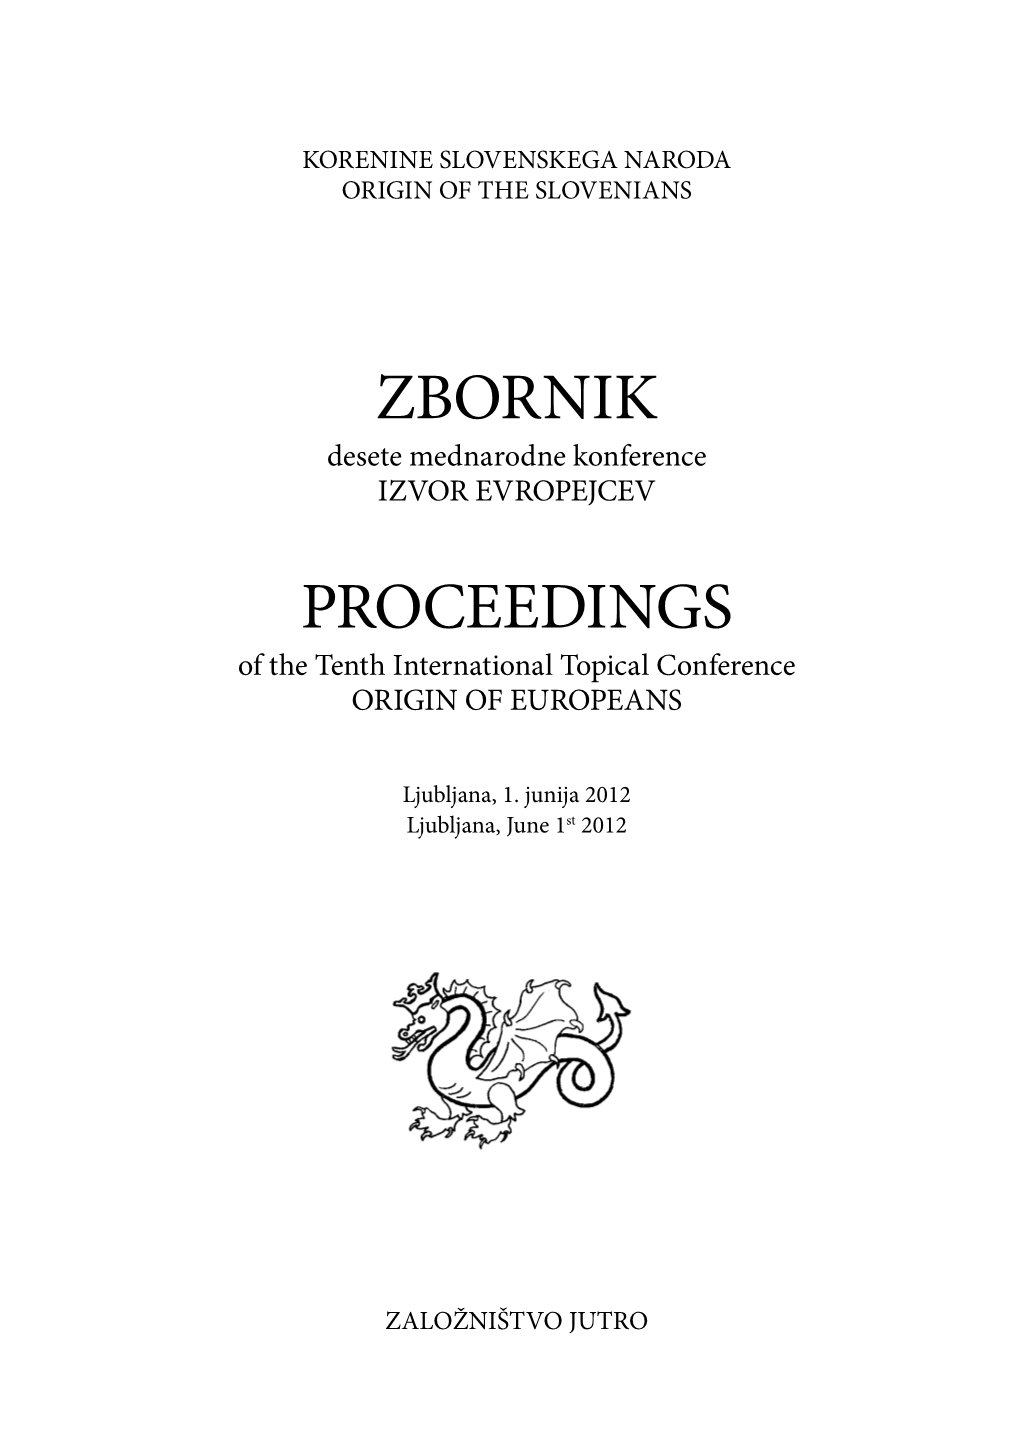 Zbornik Proceedings